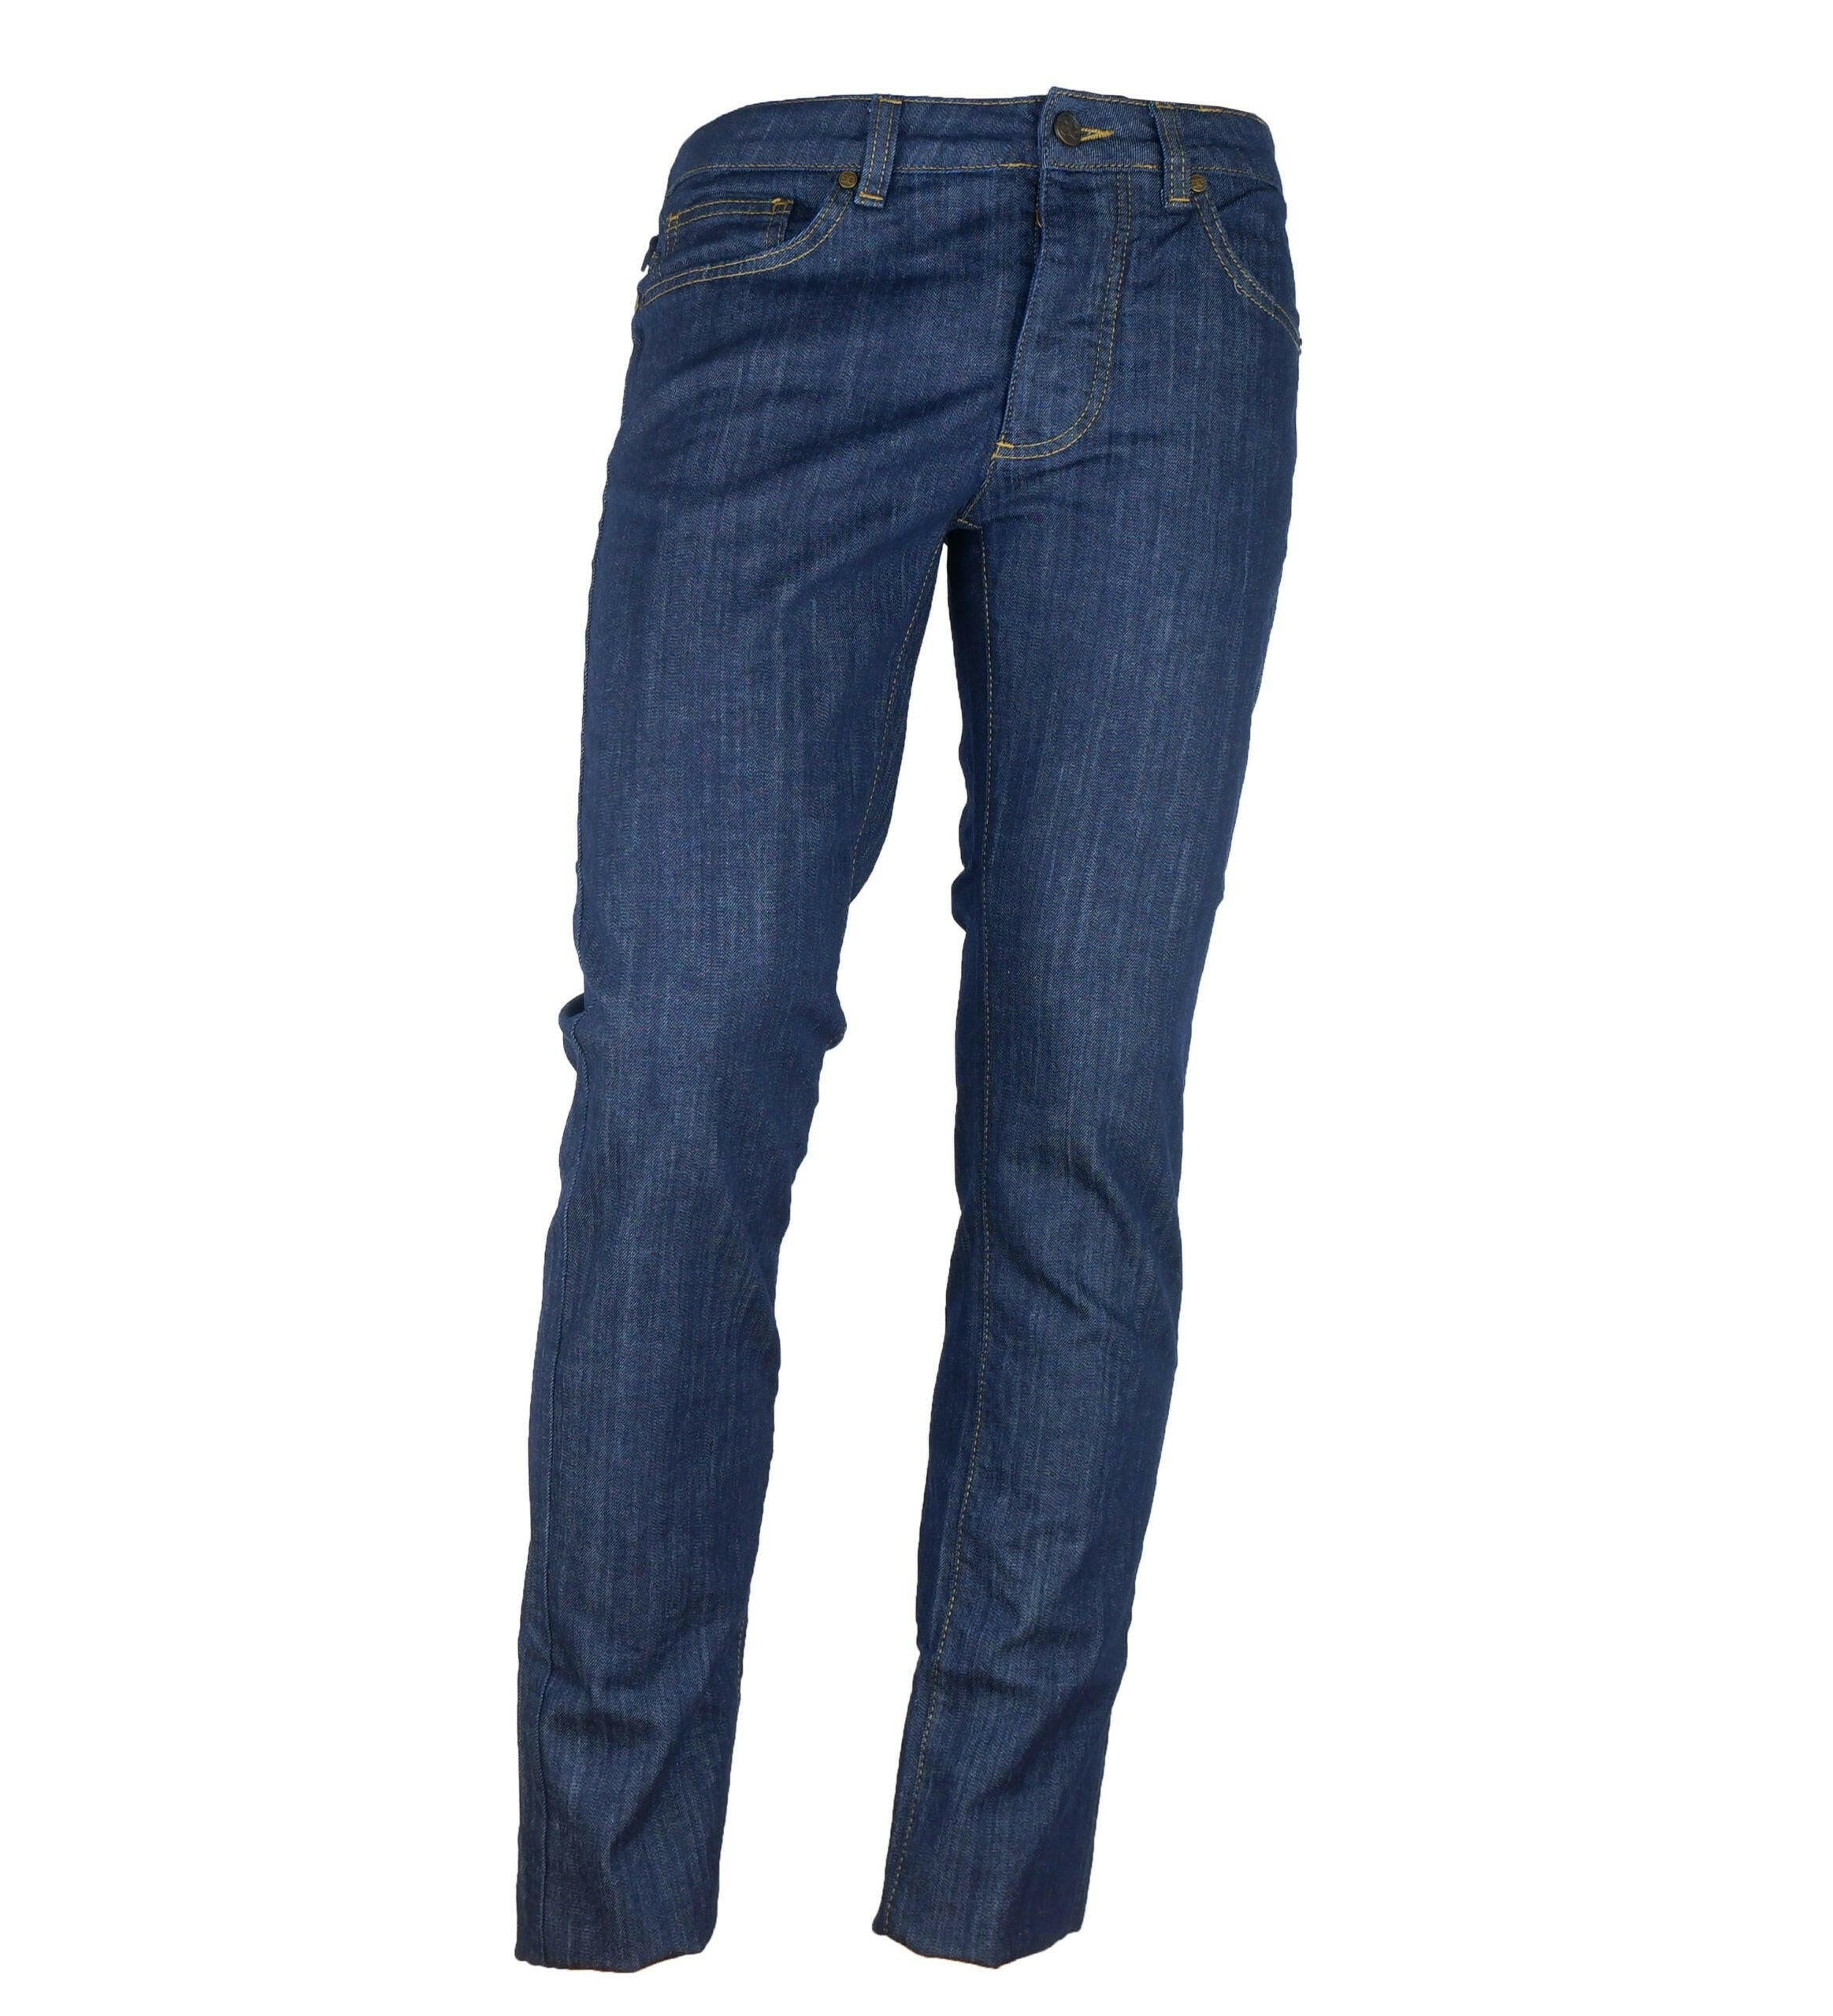 Cavalli Class Blue Cotton Jeans & Pant - GENUINE AUTHENTIC BRAND LLC  